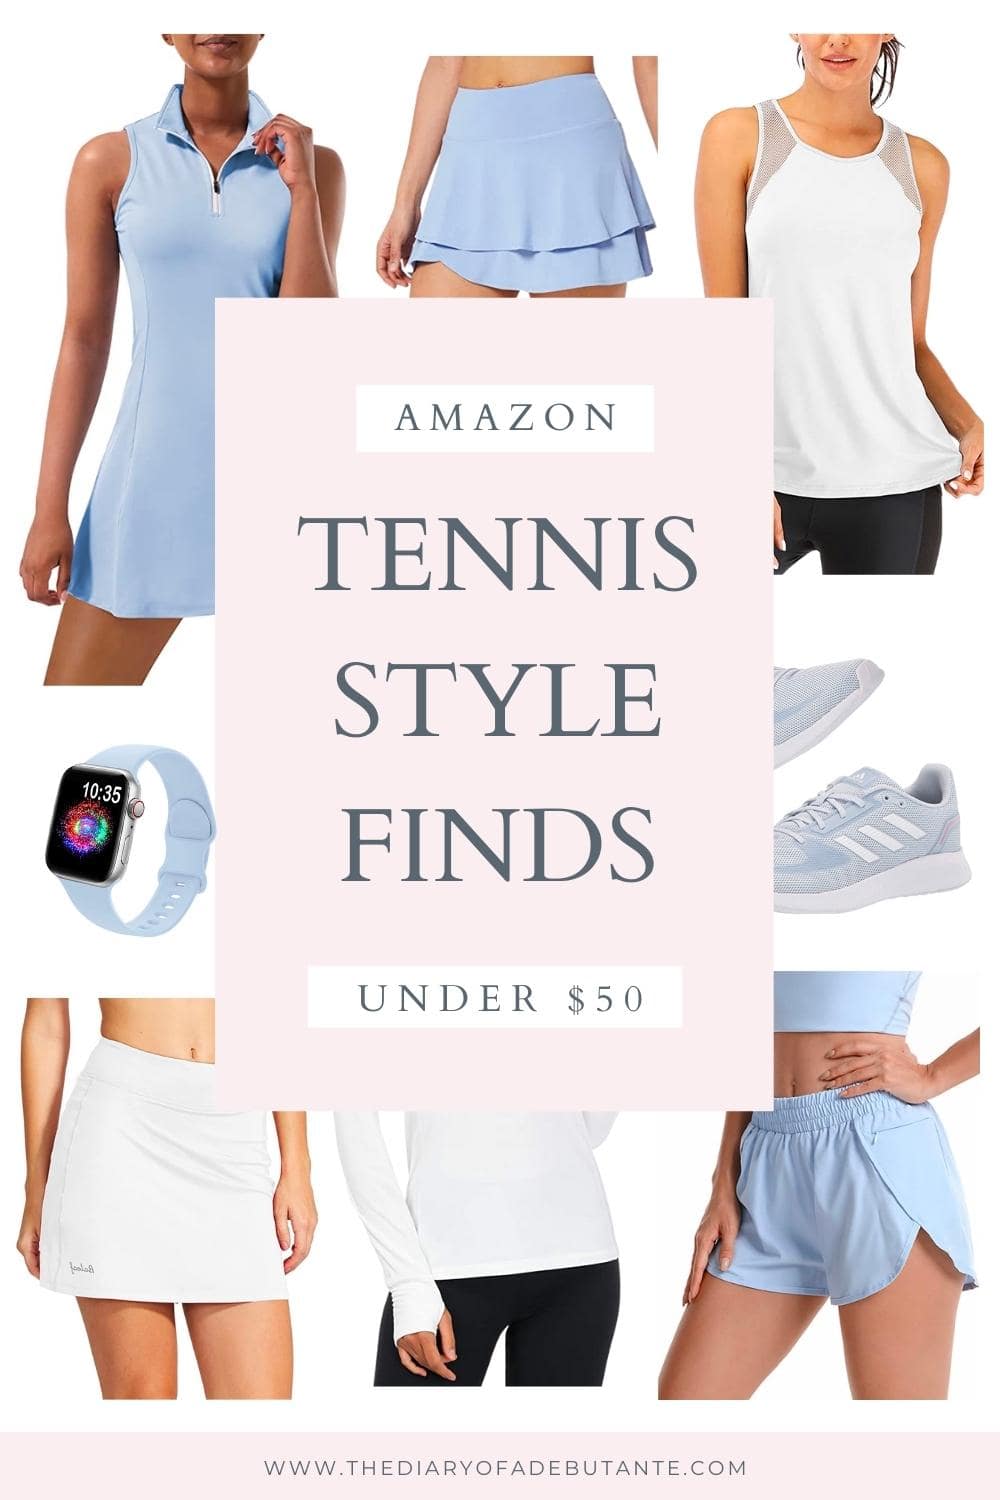 Блогер по доступным ценам Стефани Зяйка поделилась милыми идеями теннисных нарядов в дневнике дебютантки.